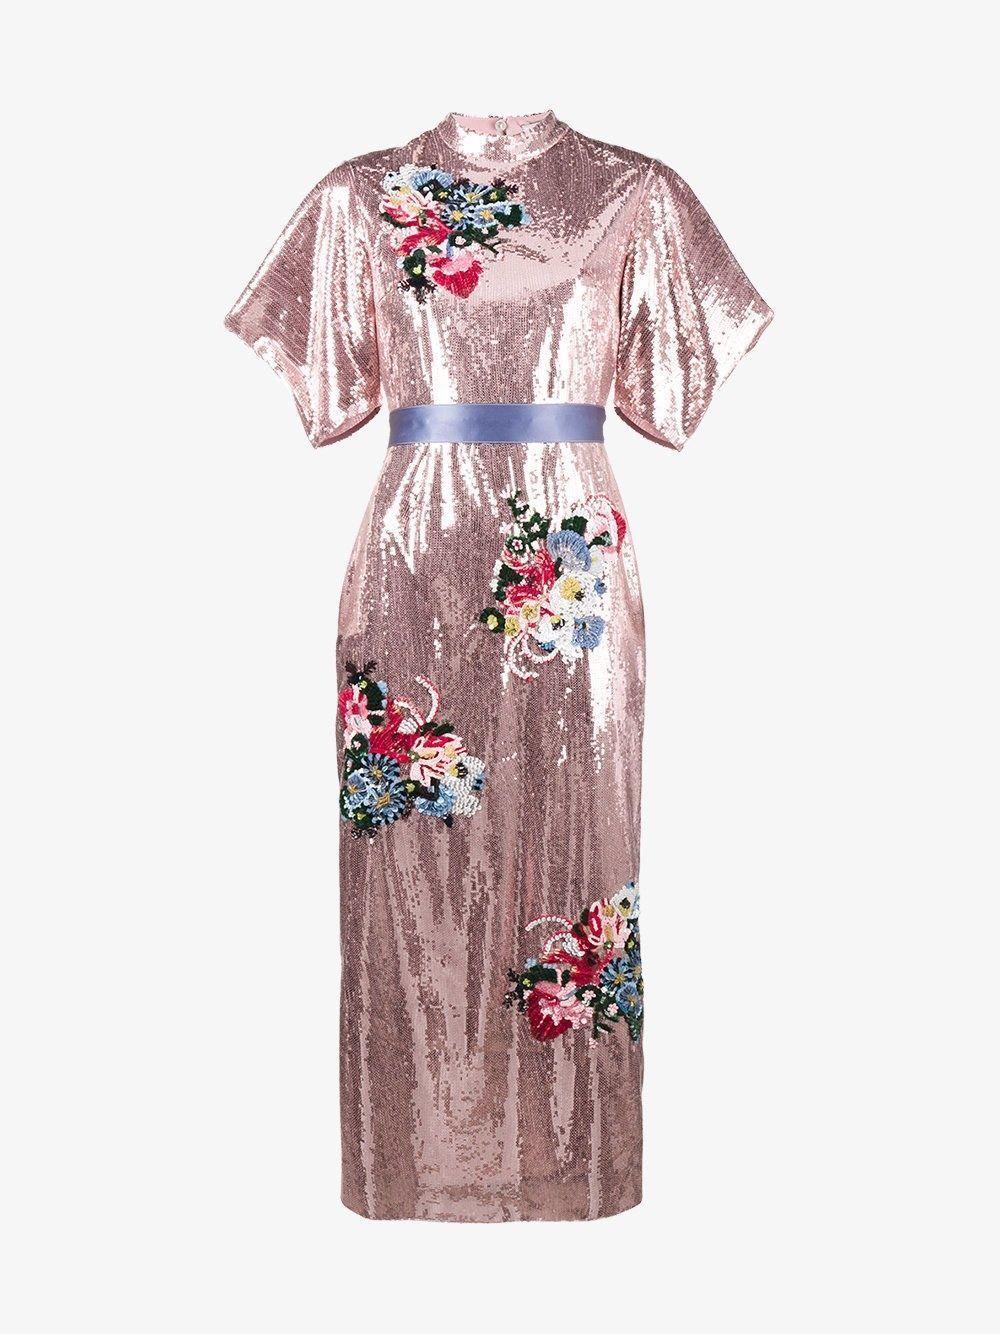 DETALJRIK: Dette er kjolen Melania Trump brukte for å feire det nye året. Foto: Produsenten.